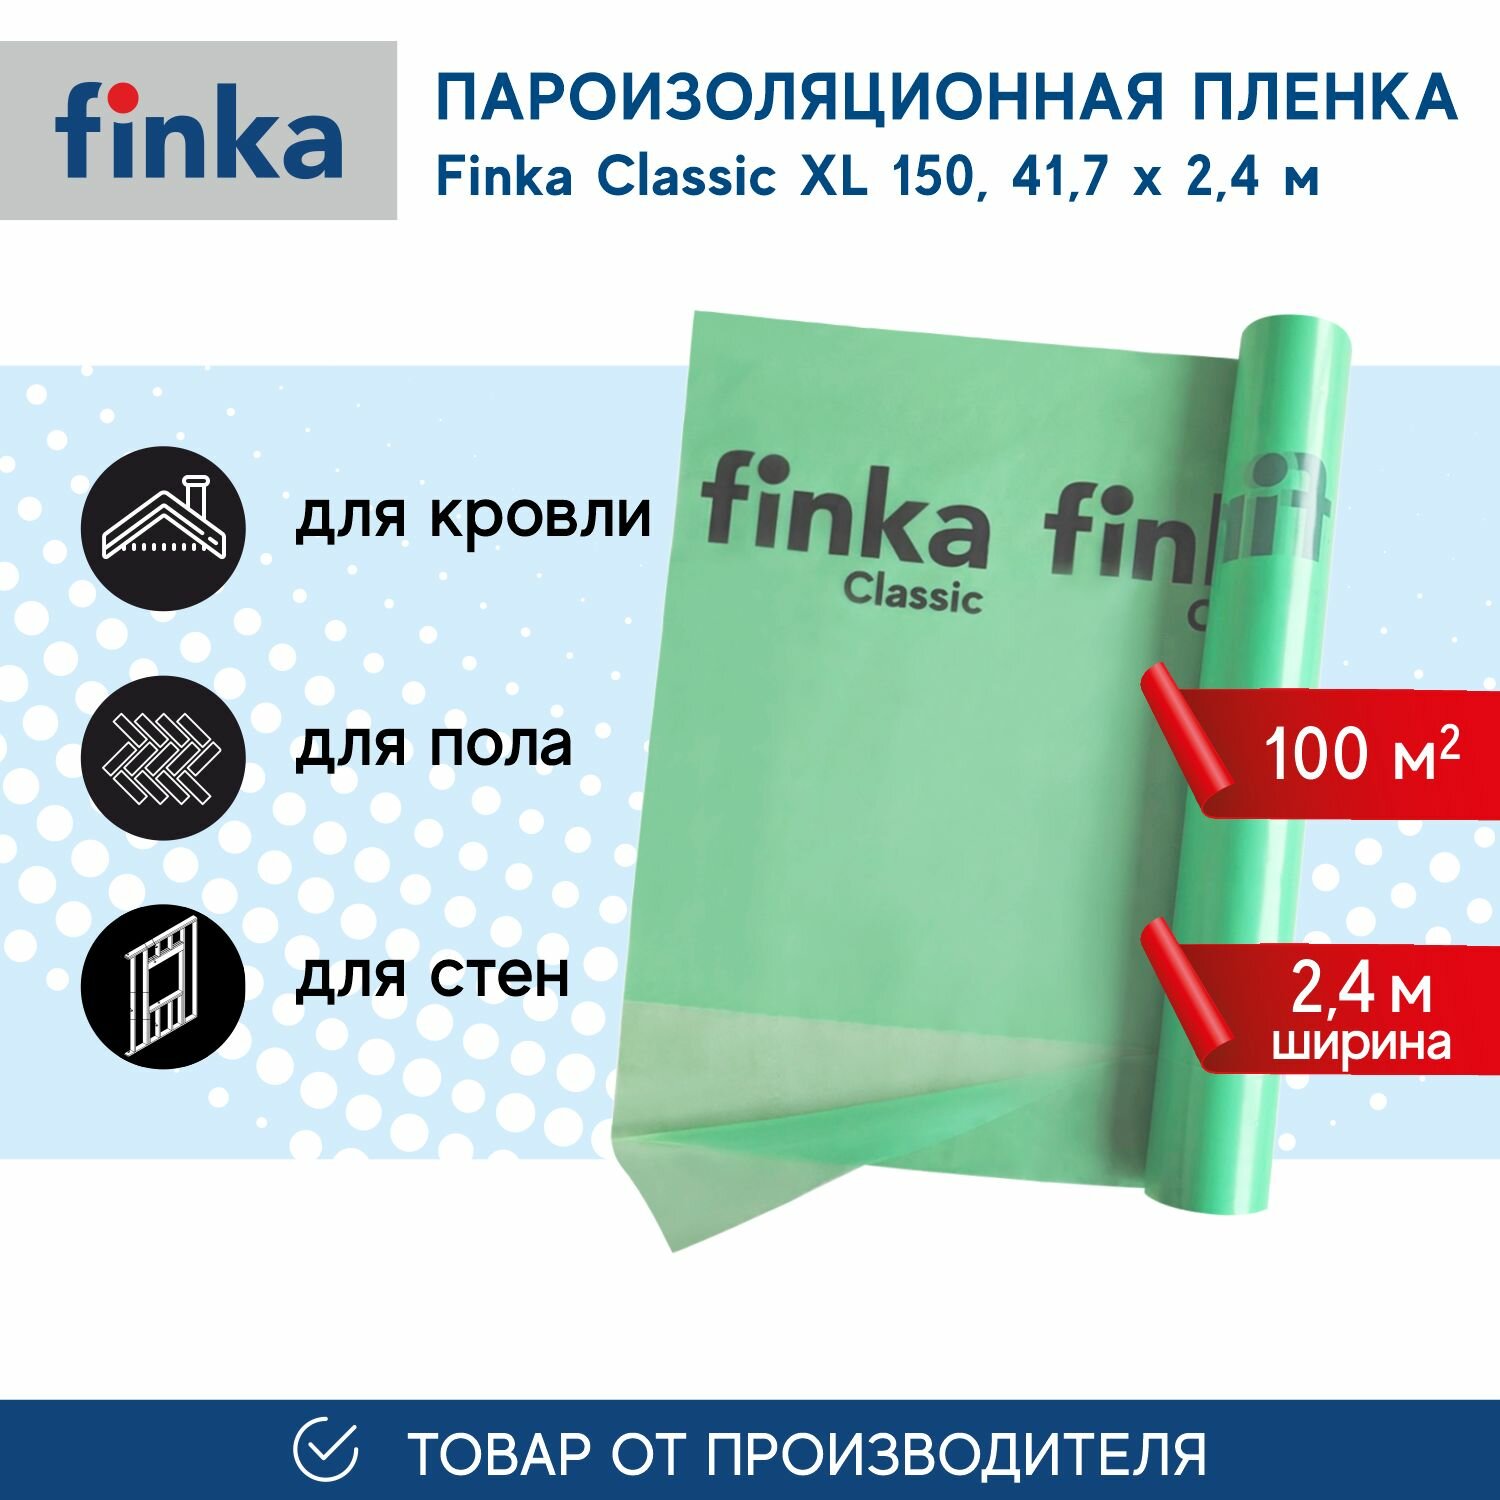 Пароизоляция Finka Classic ХL, 100м2